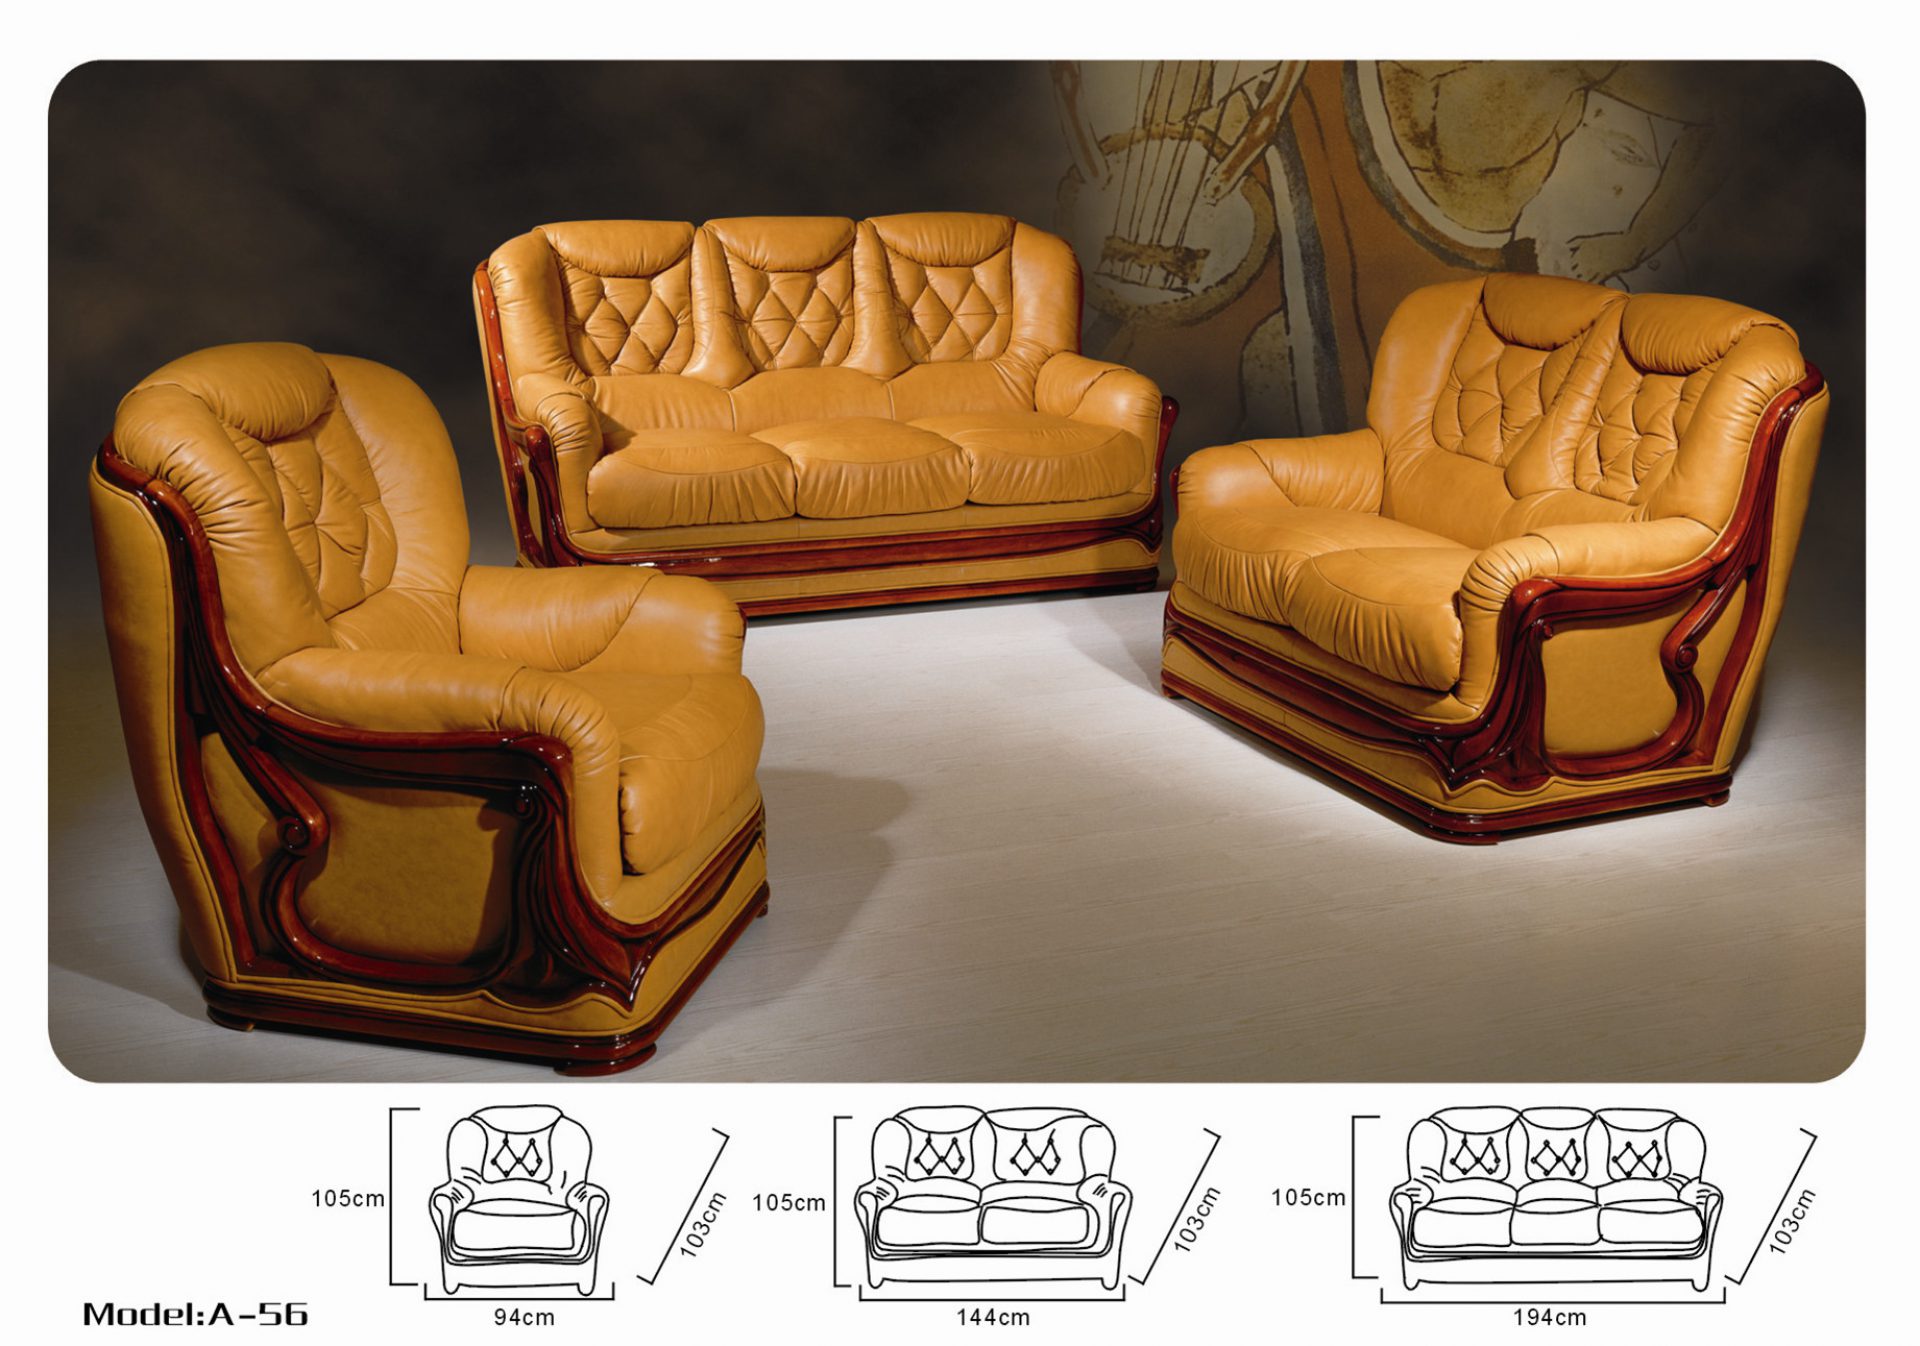 Авито мебель кресло диван. Кожаное кресло Кинг( Консул 2020). Комплект мягкой мебели "Chester" vch002\. Мебель Версаче комплект диван кресло. Диван и два кресла "Кинг" (3м+12+12), натуральная кожа № 1060.